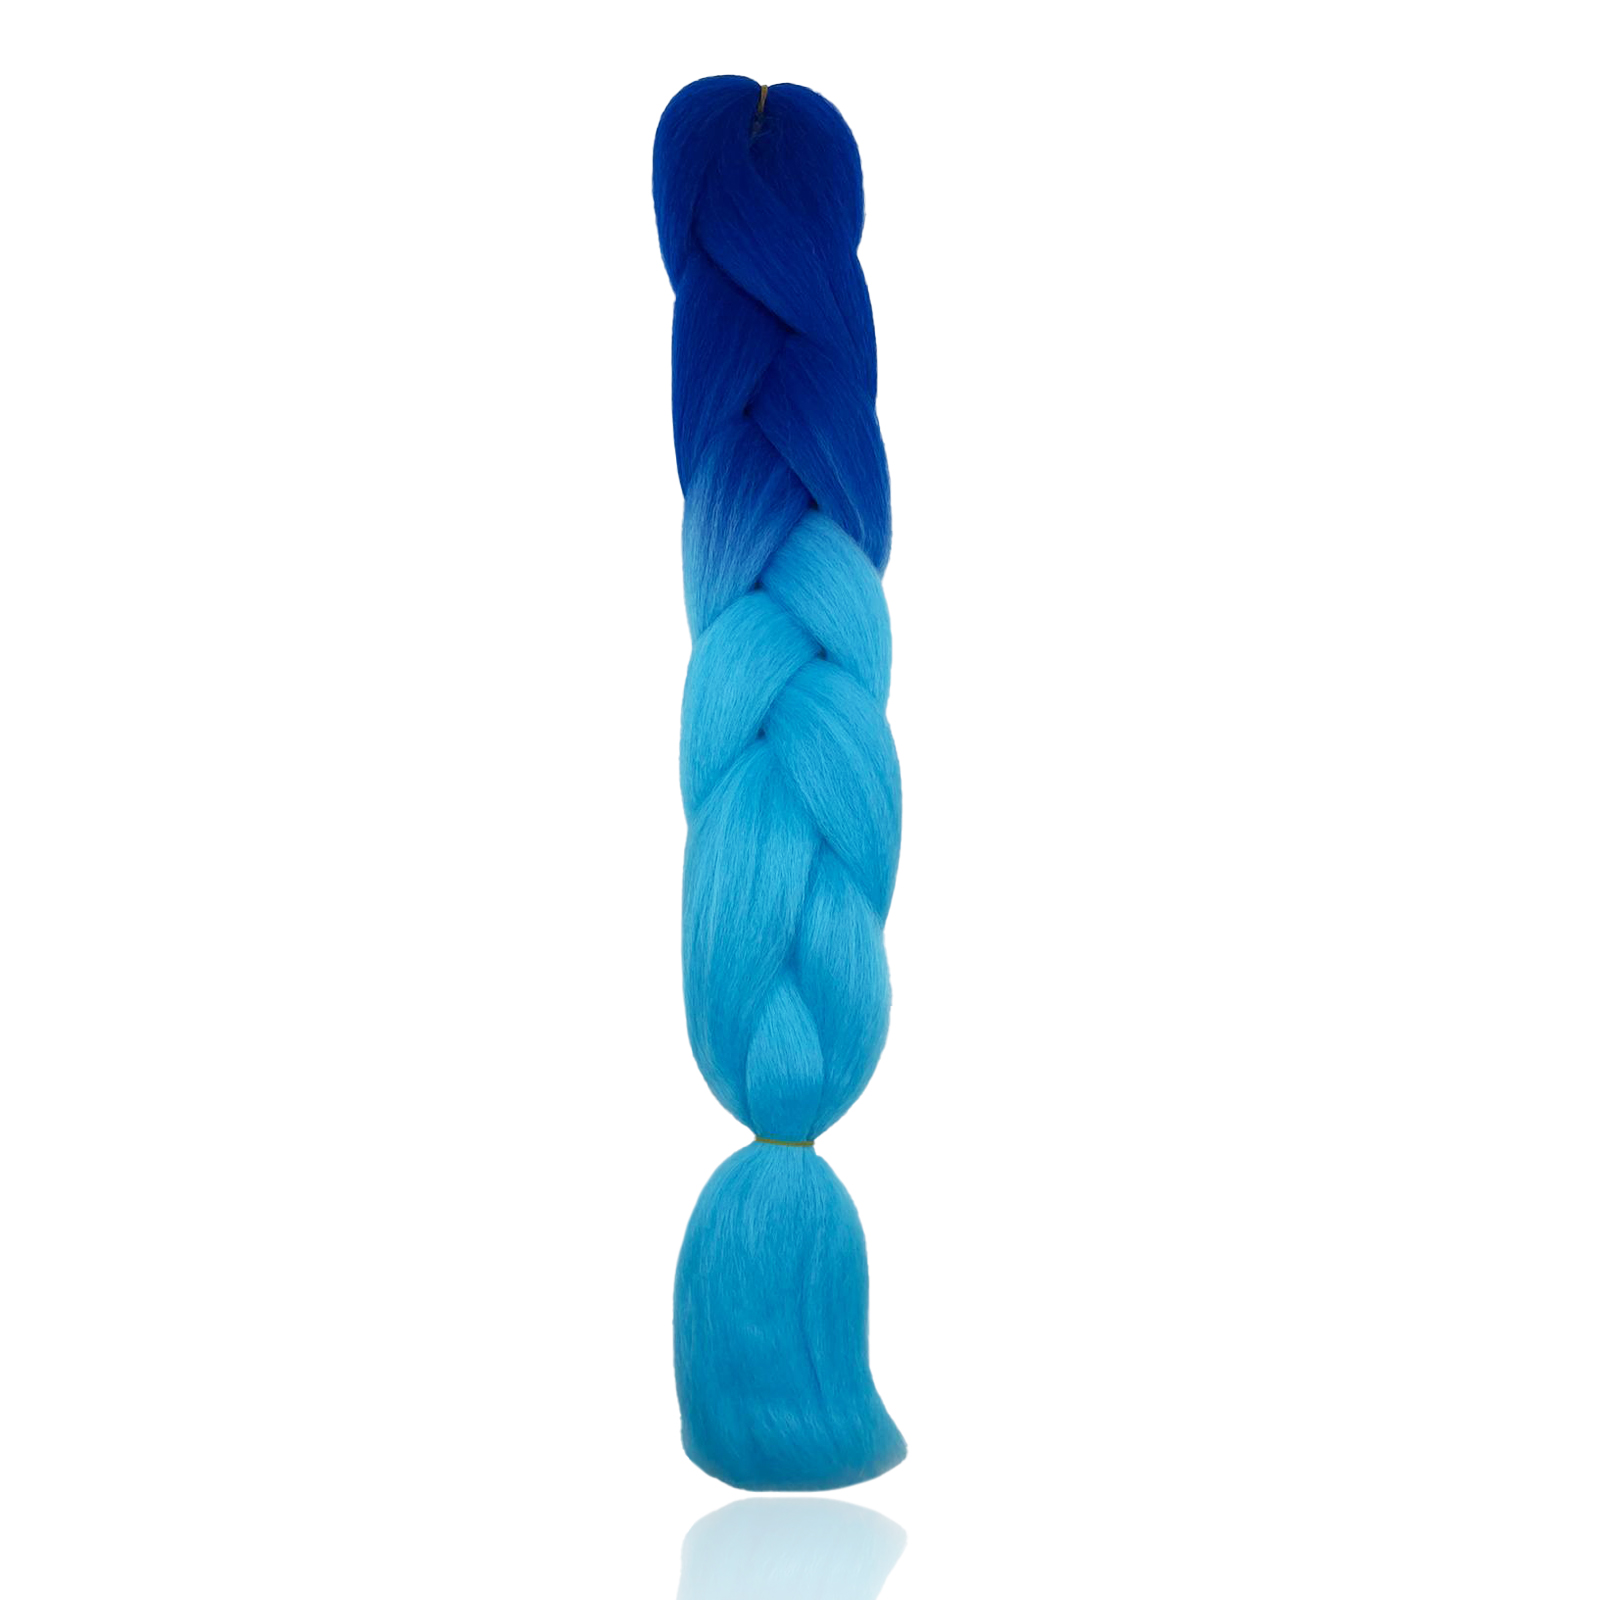 Канекалон Market toys lab накладные волосы для плетения кос, сине-голубой канекалон сиреневый 50 см winx